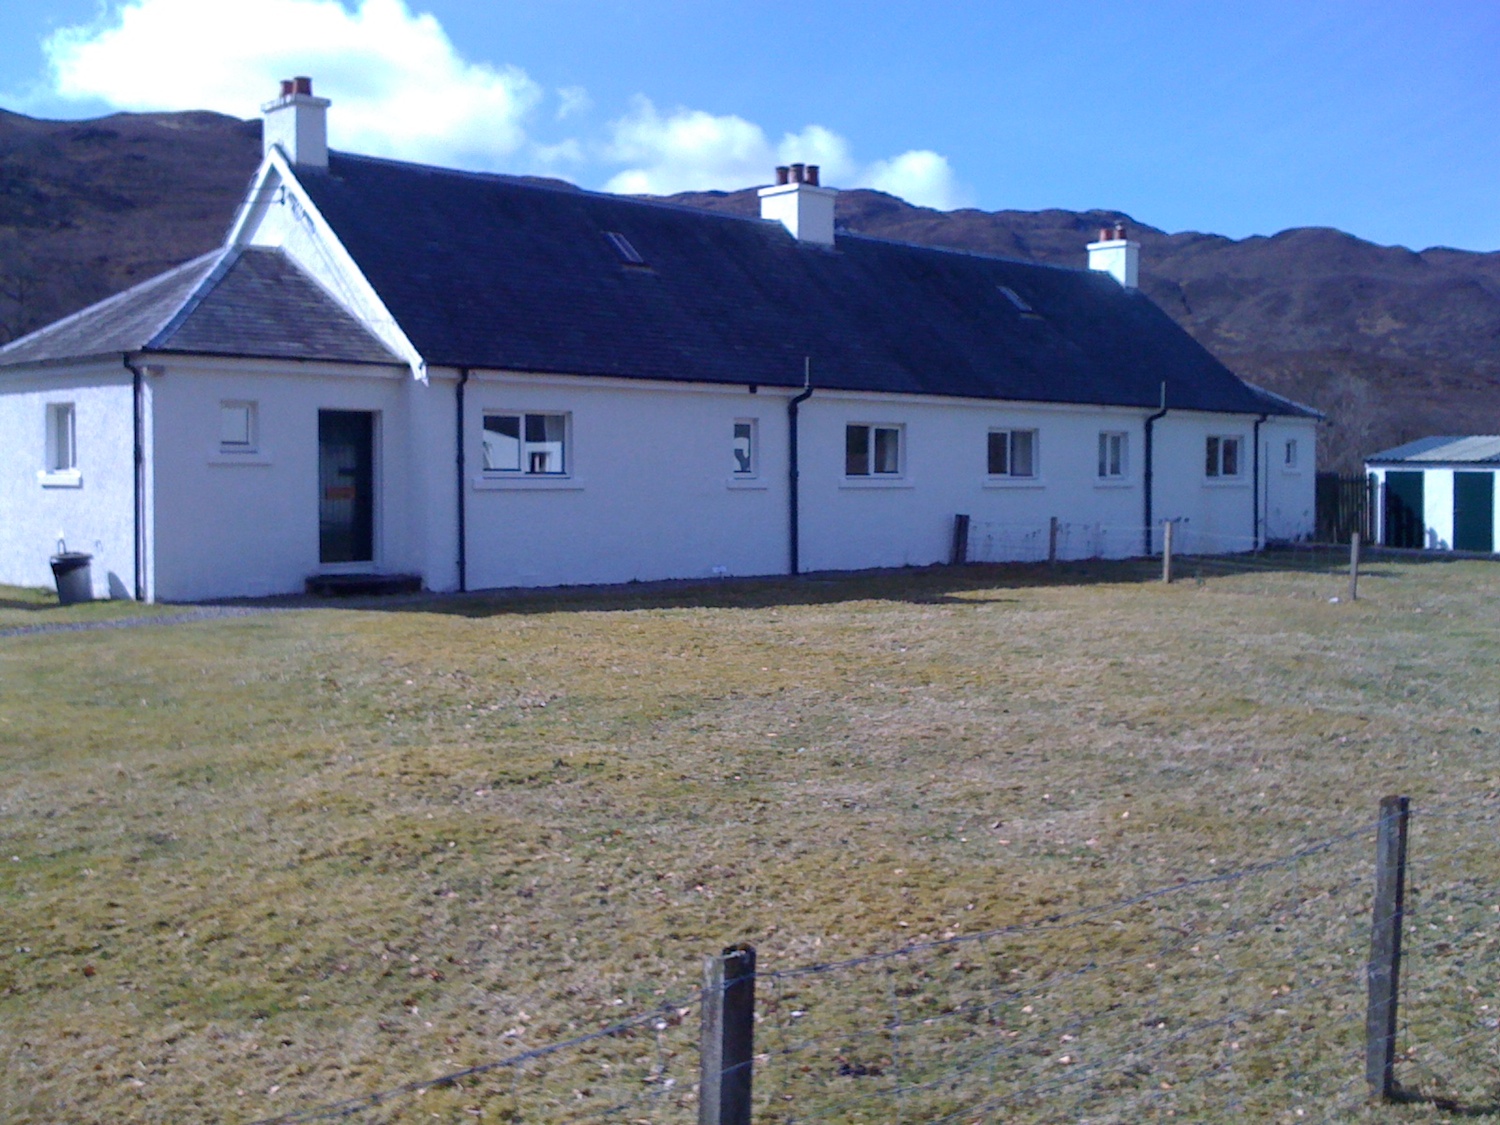 Strathan Cottage on left